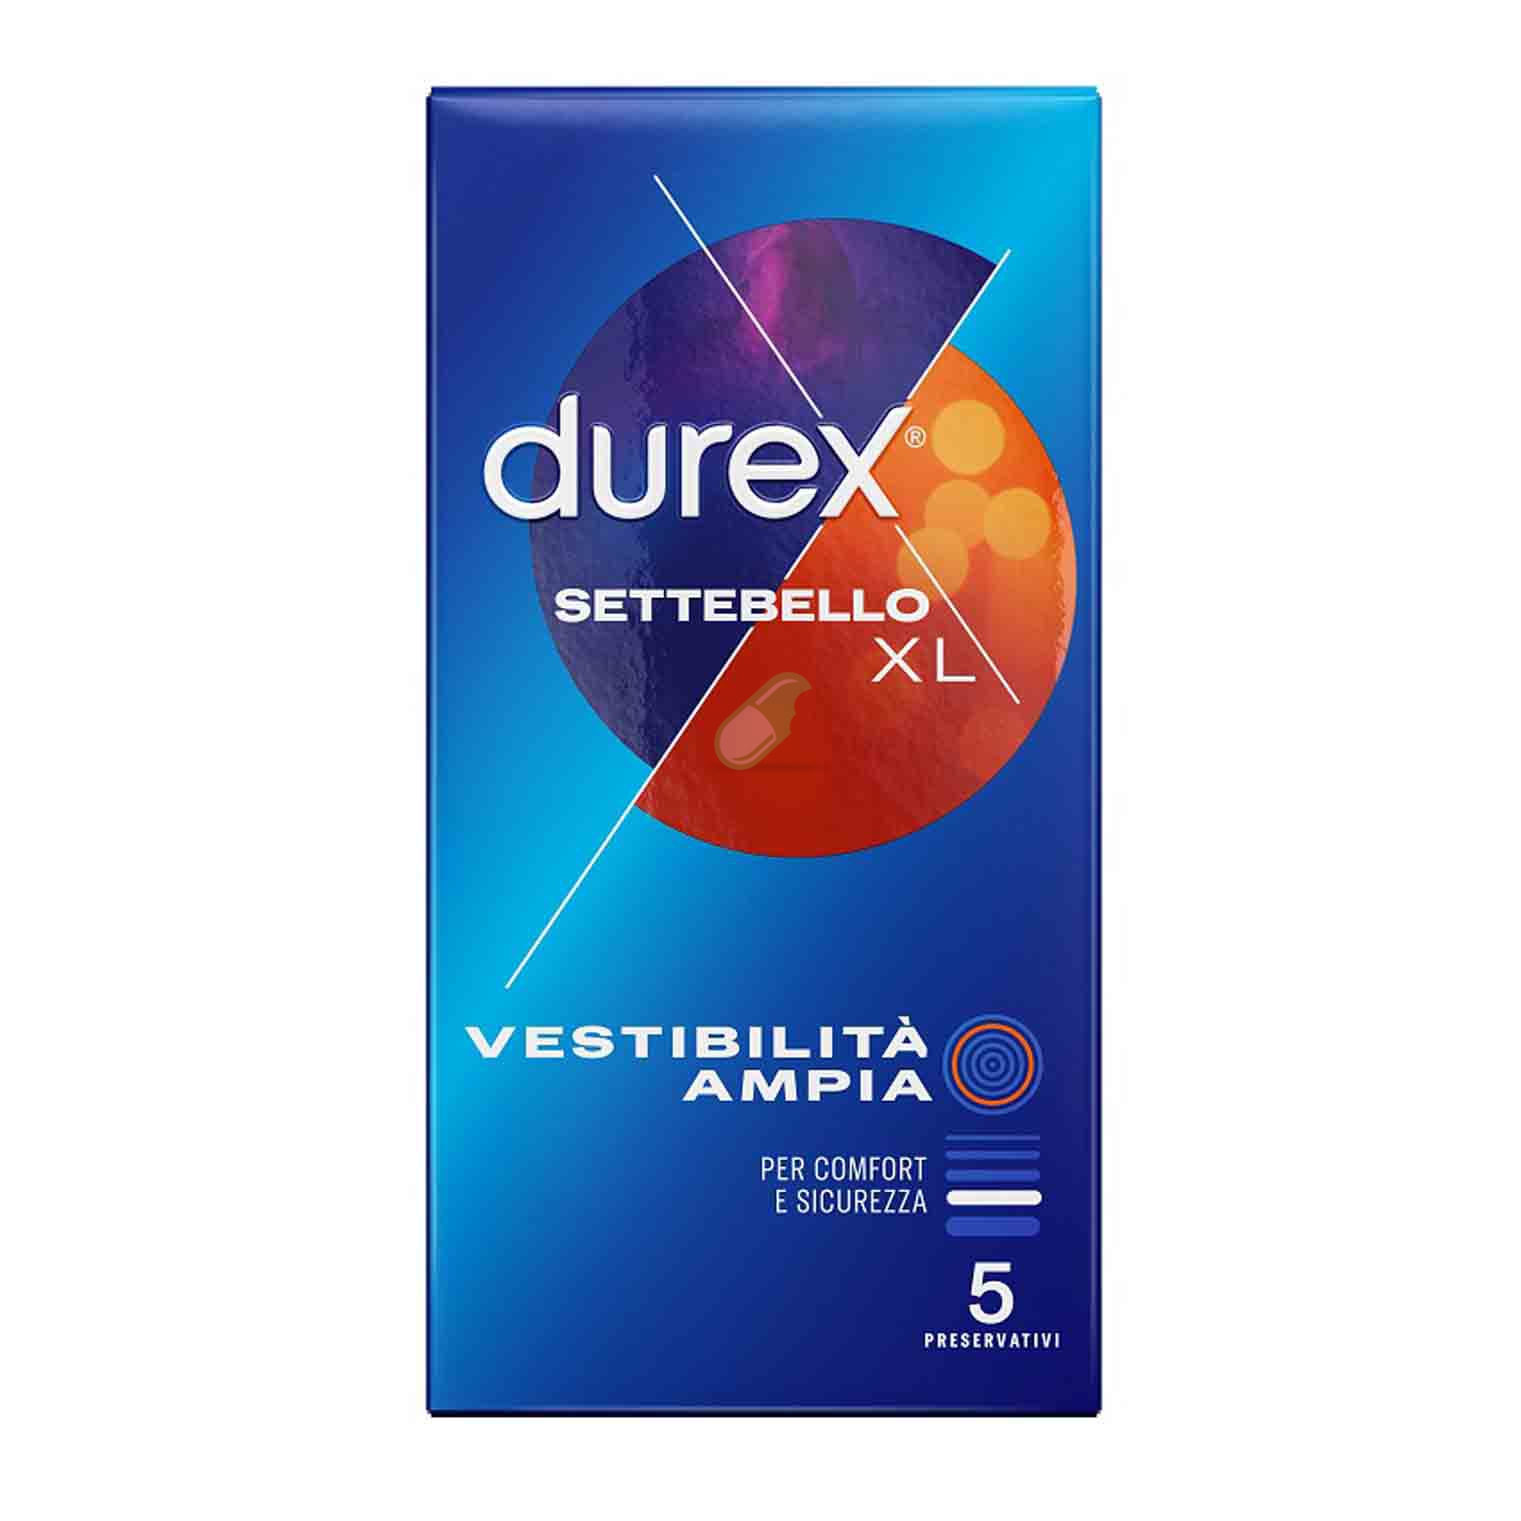 Durex Settebello XL Easy on 5 profiltattici